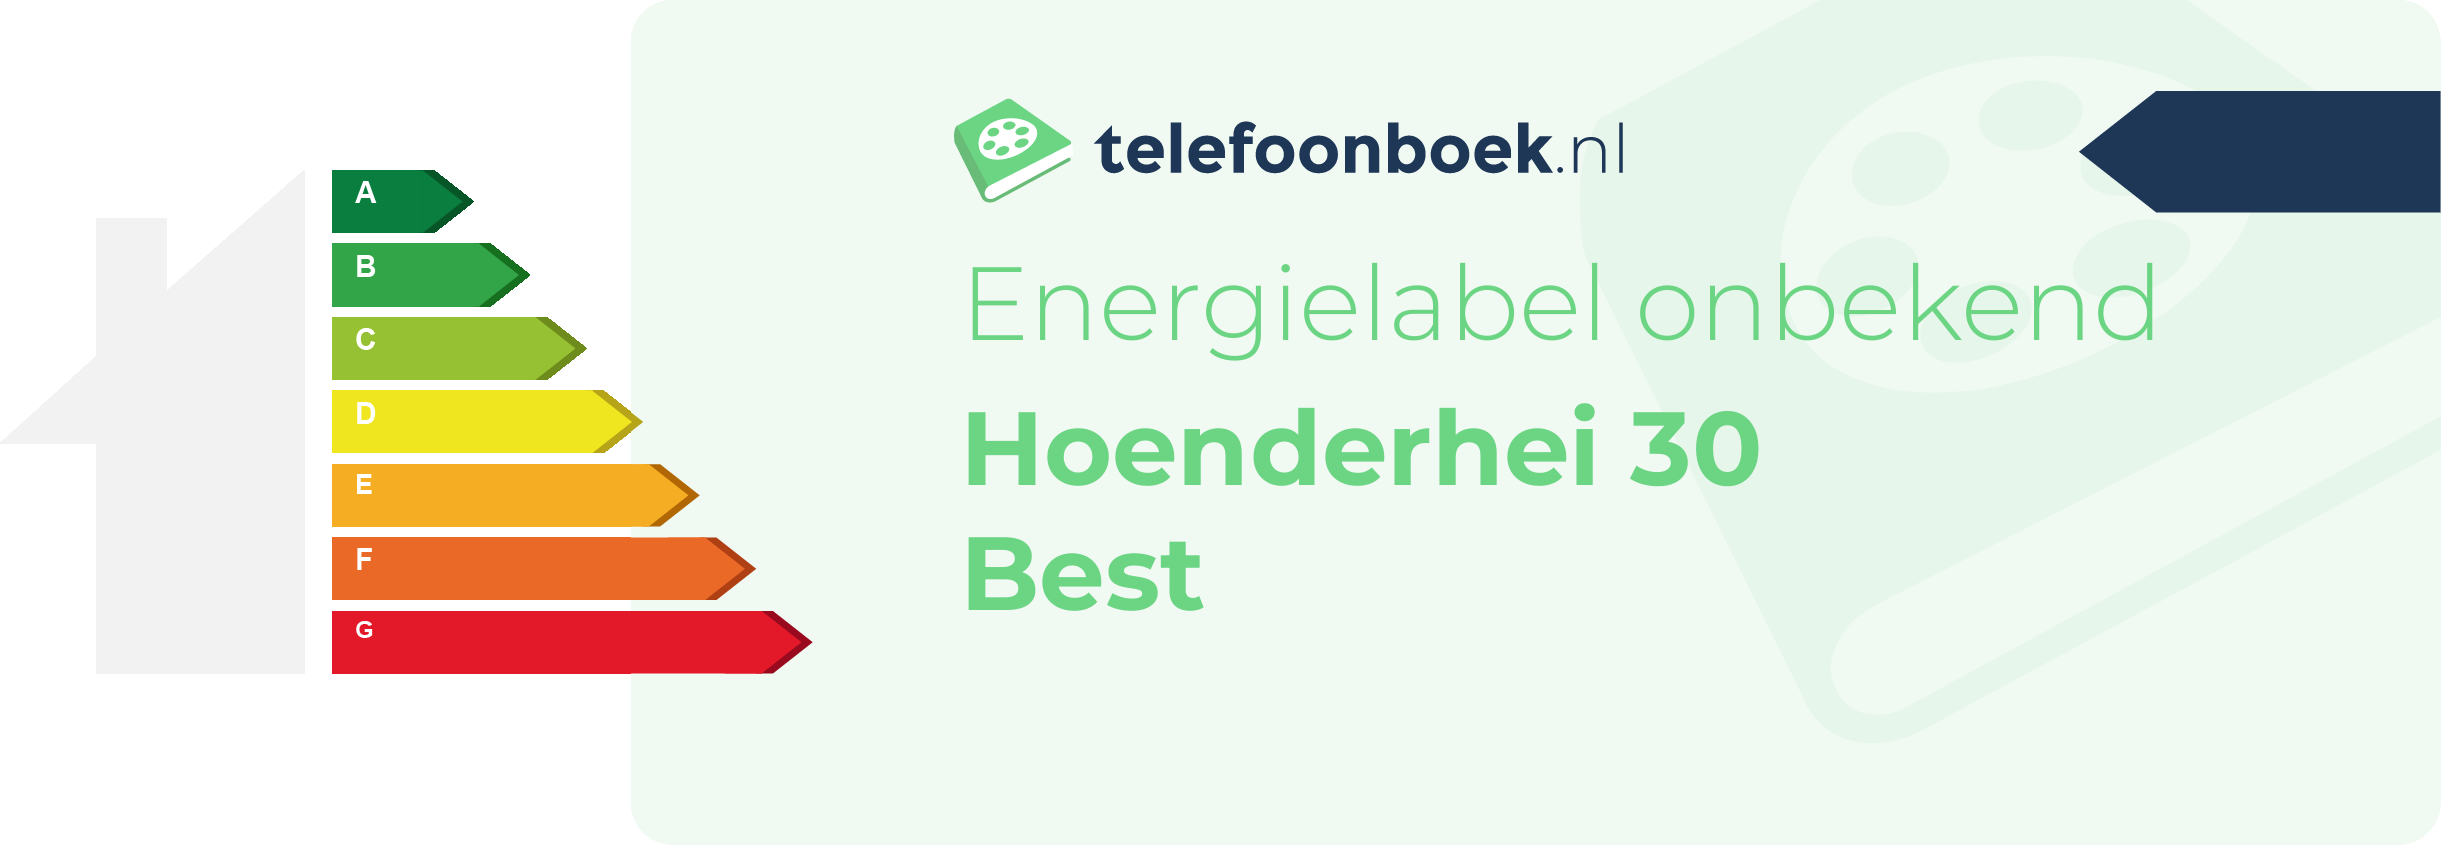 Energielabel Hoenderhei 30 Best